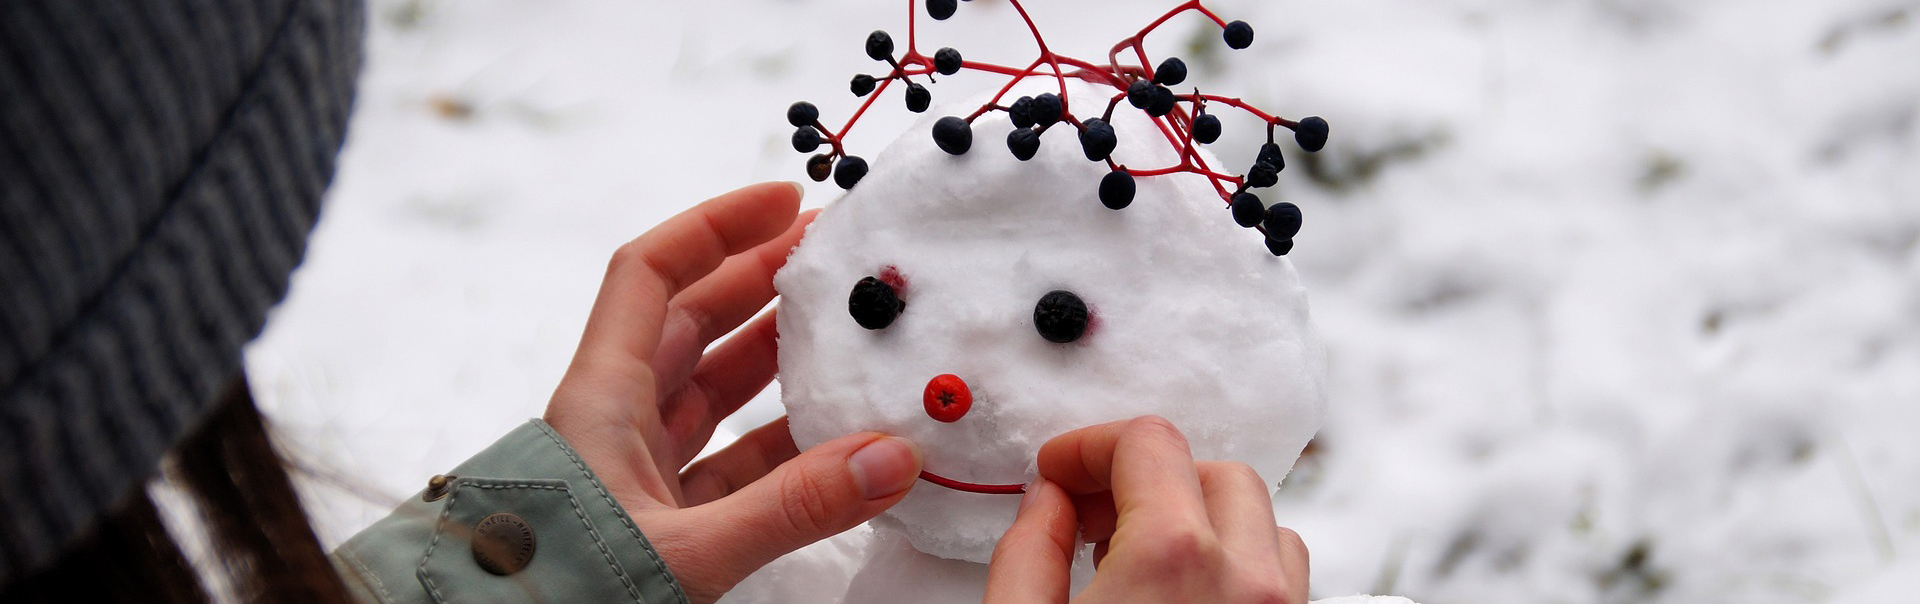 Ett barn dekorerar en snögubbe